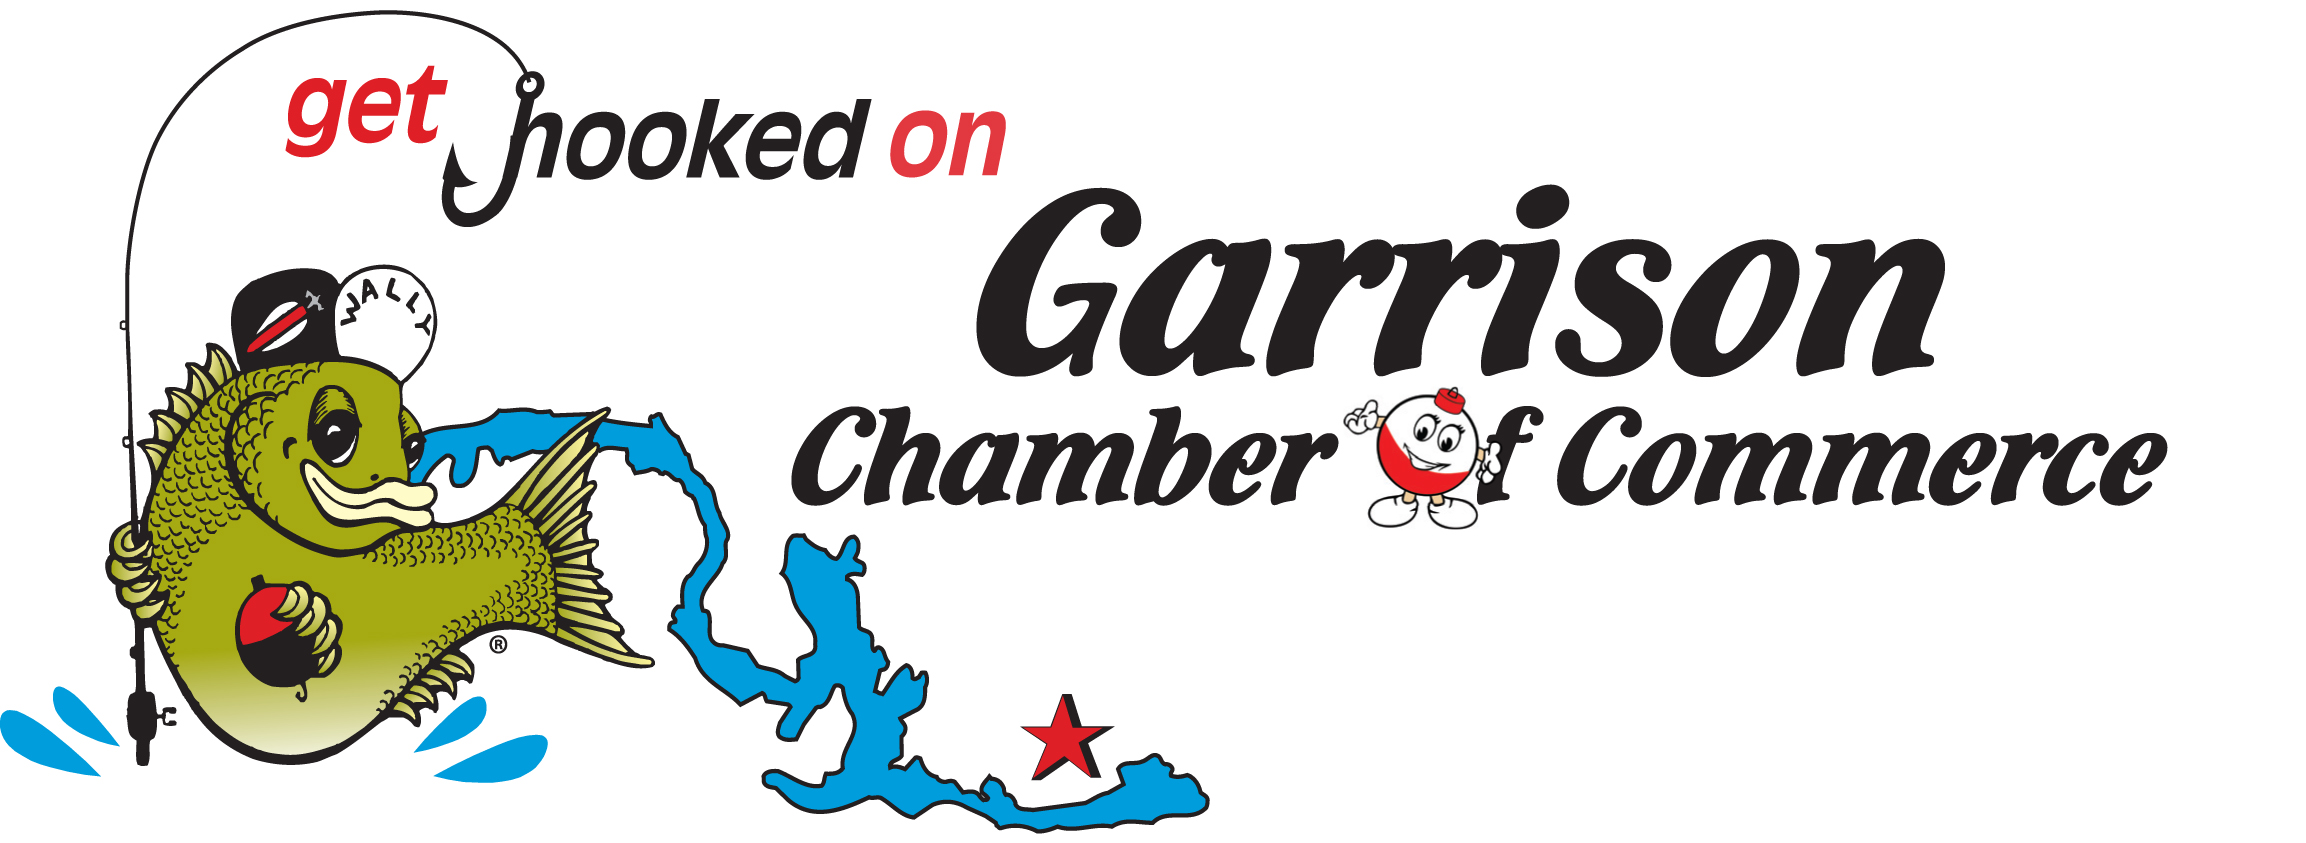 Garrison_Chamber_of_Commerce_logo_color_2.jpg Image